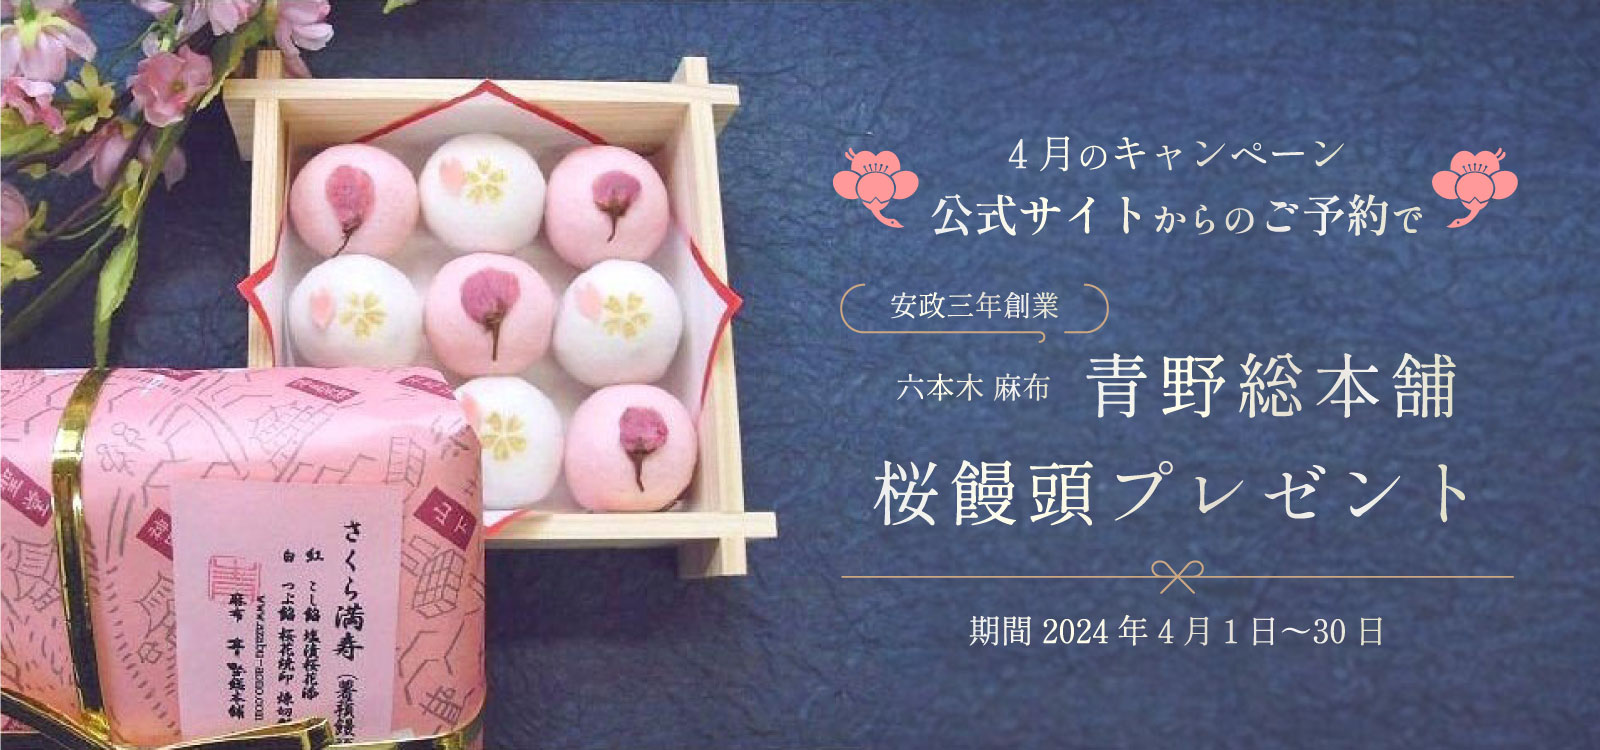 公式サイトからのご予約で 六本木・麻布 青野総本舗 桜饅頭プレゼント